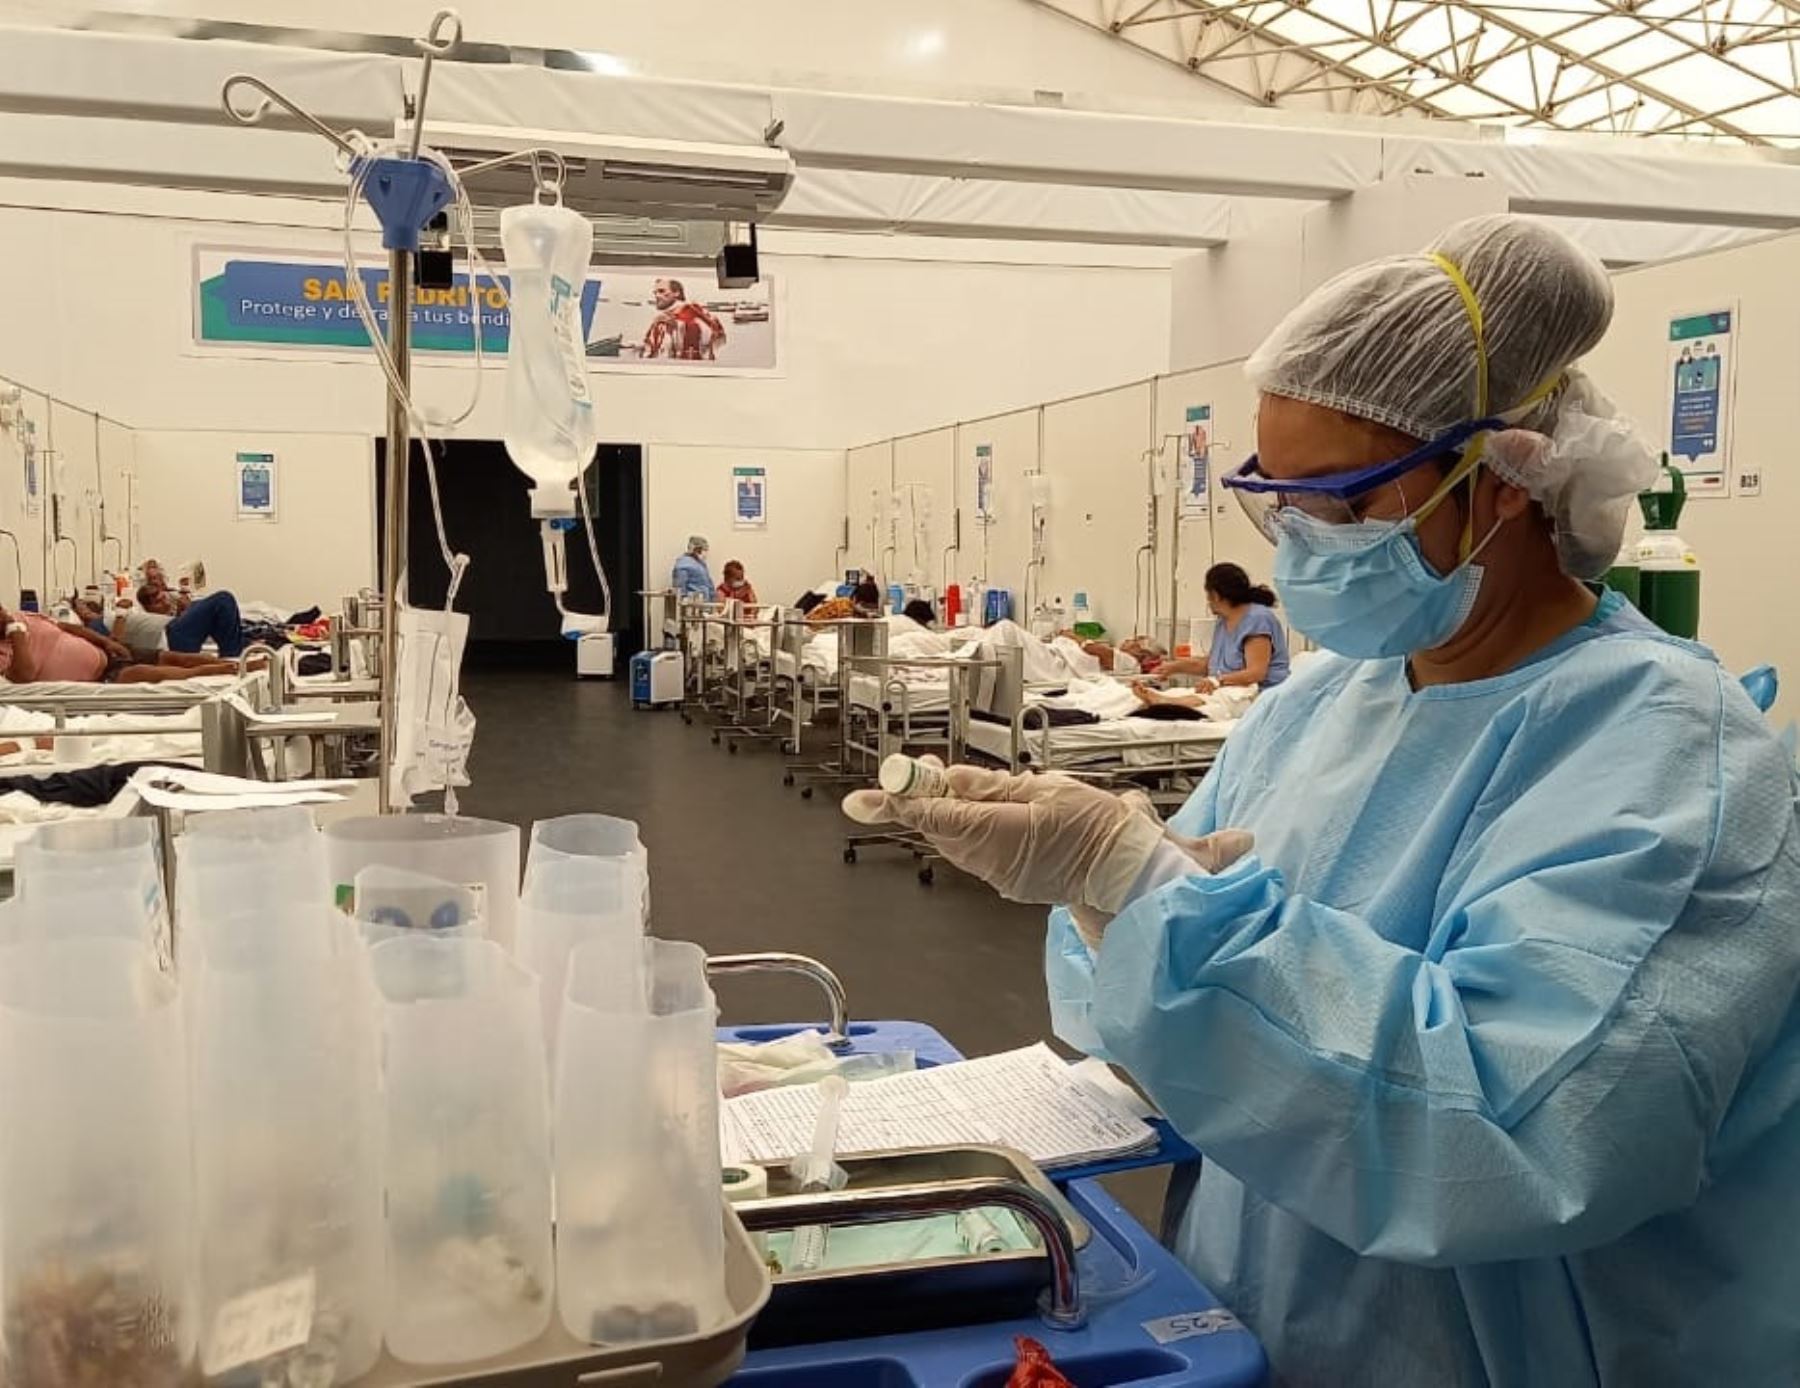 La provincia de Santa, en Áncash, registró un ligero descenso en el número de fallecidos y contagios por la pandemia de coronavirus (covid-19) durante febrero. ANDINA/Difusión